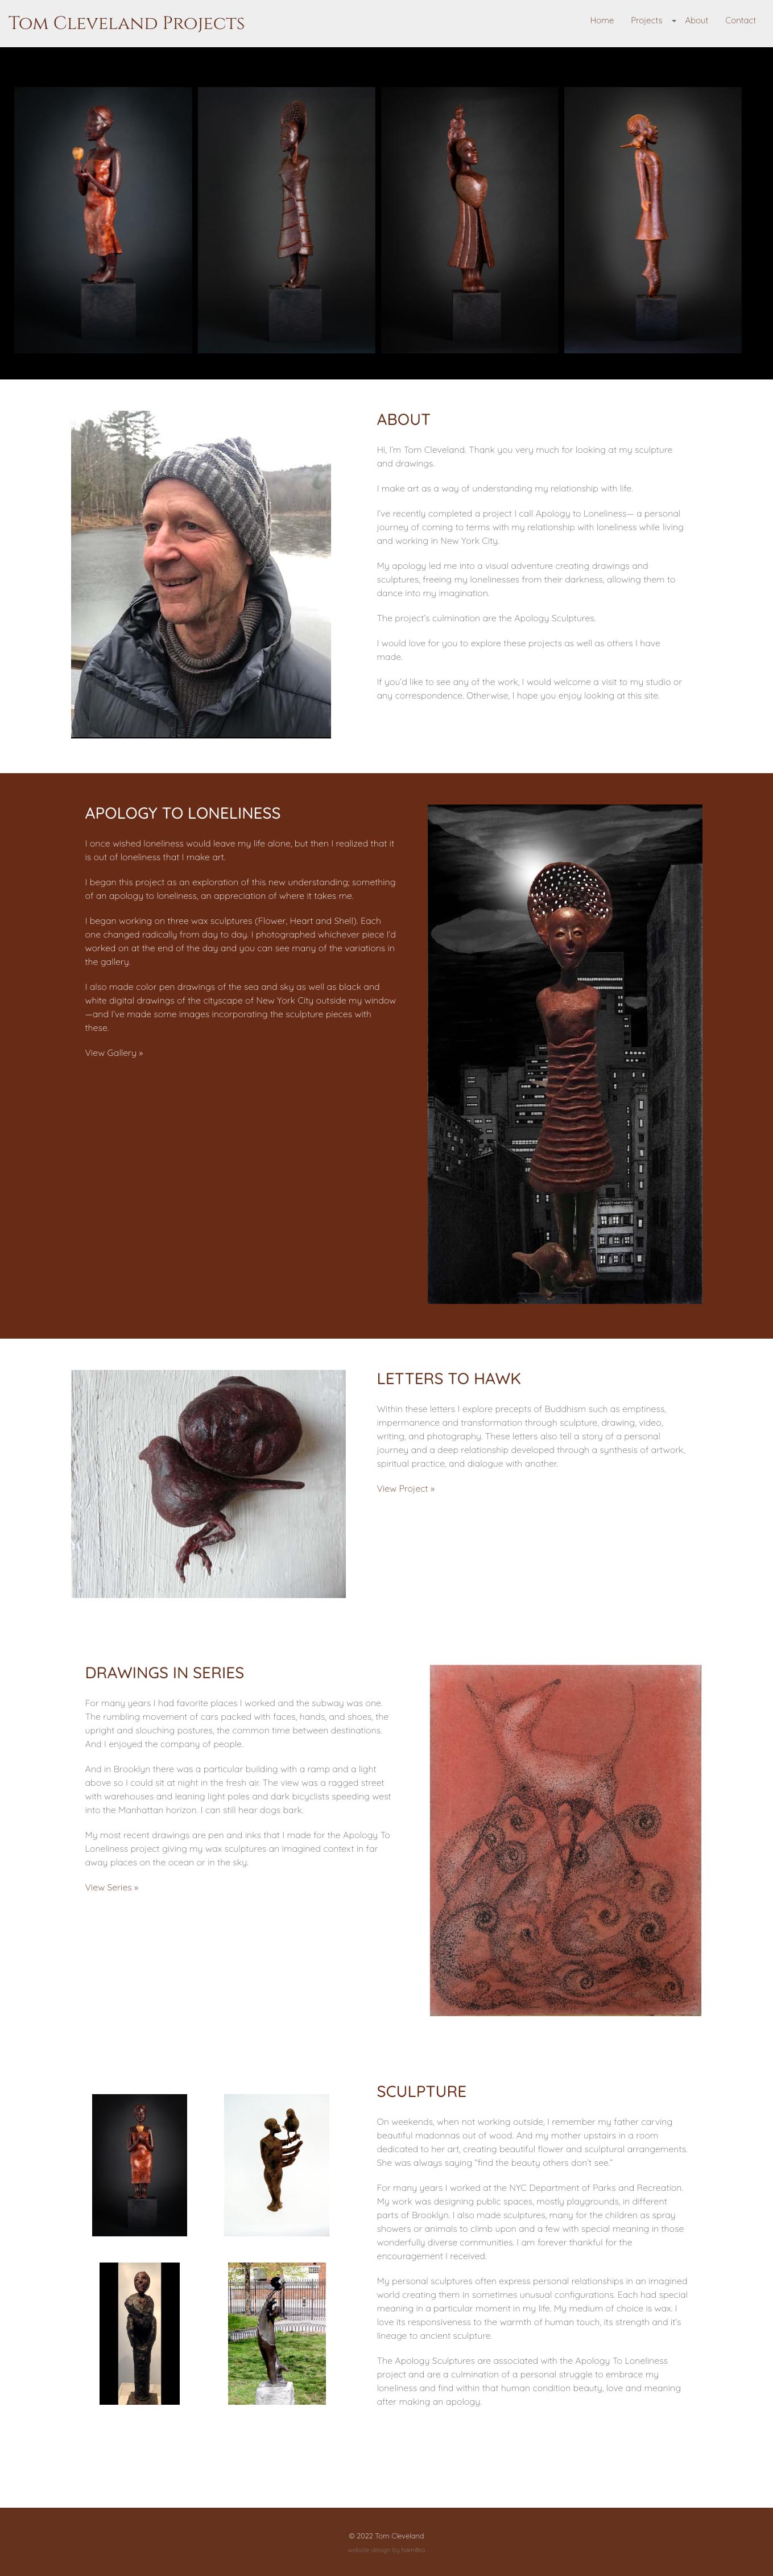 website design for a sculptor - homepage